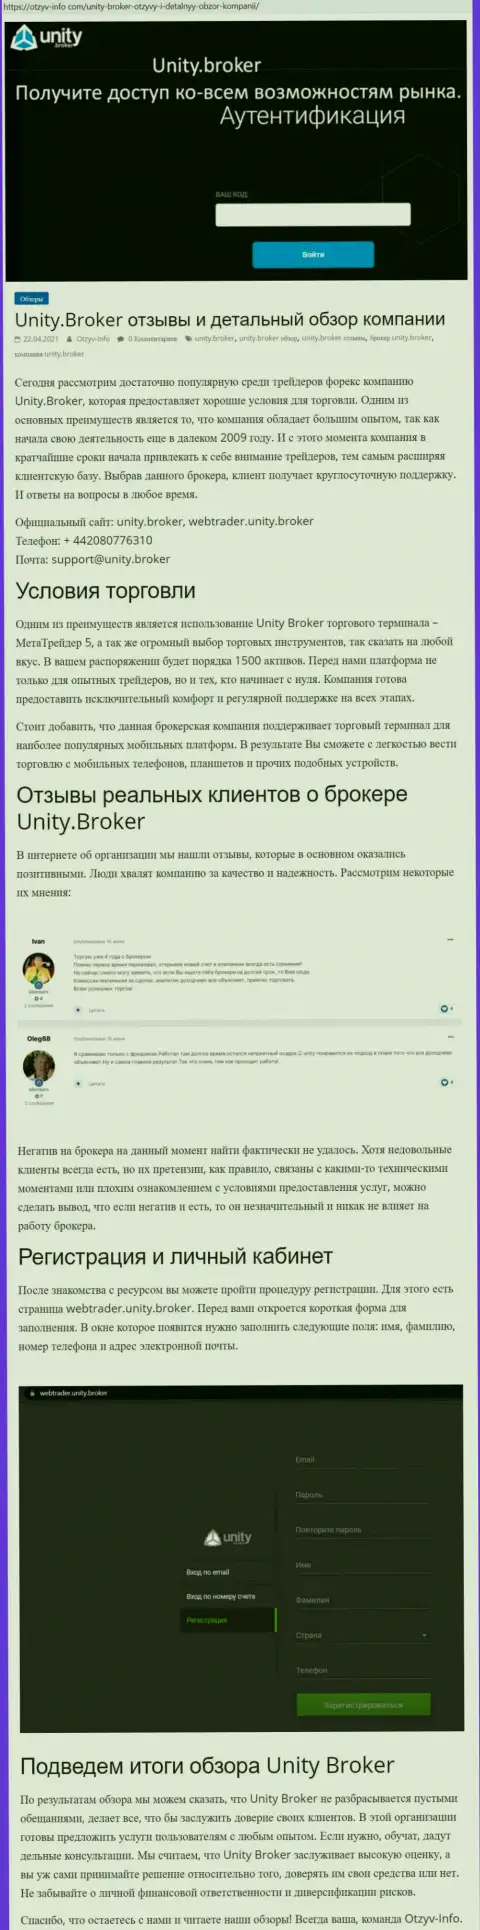 Обзор работы форекс-дилера Unity Broker на информационном портале otzyv info com